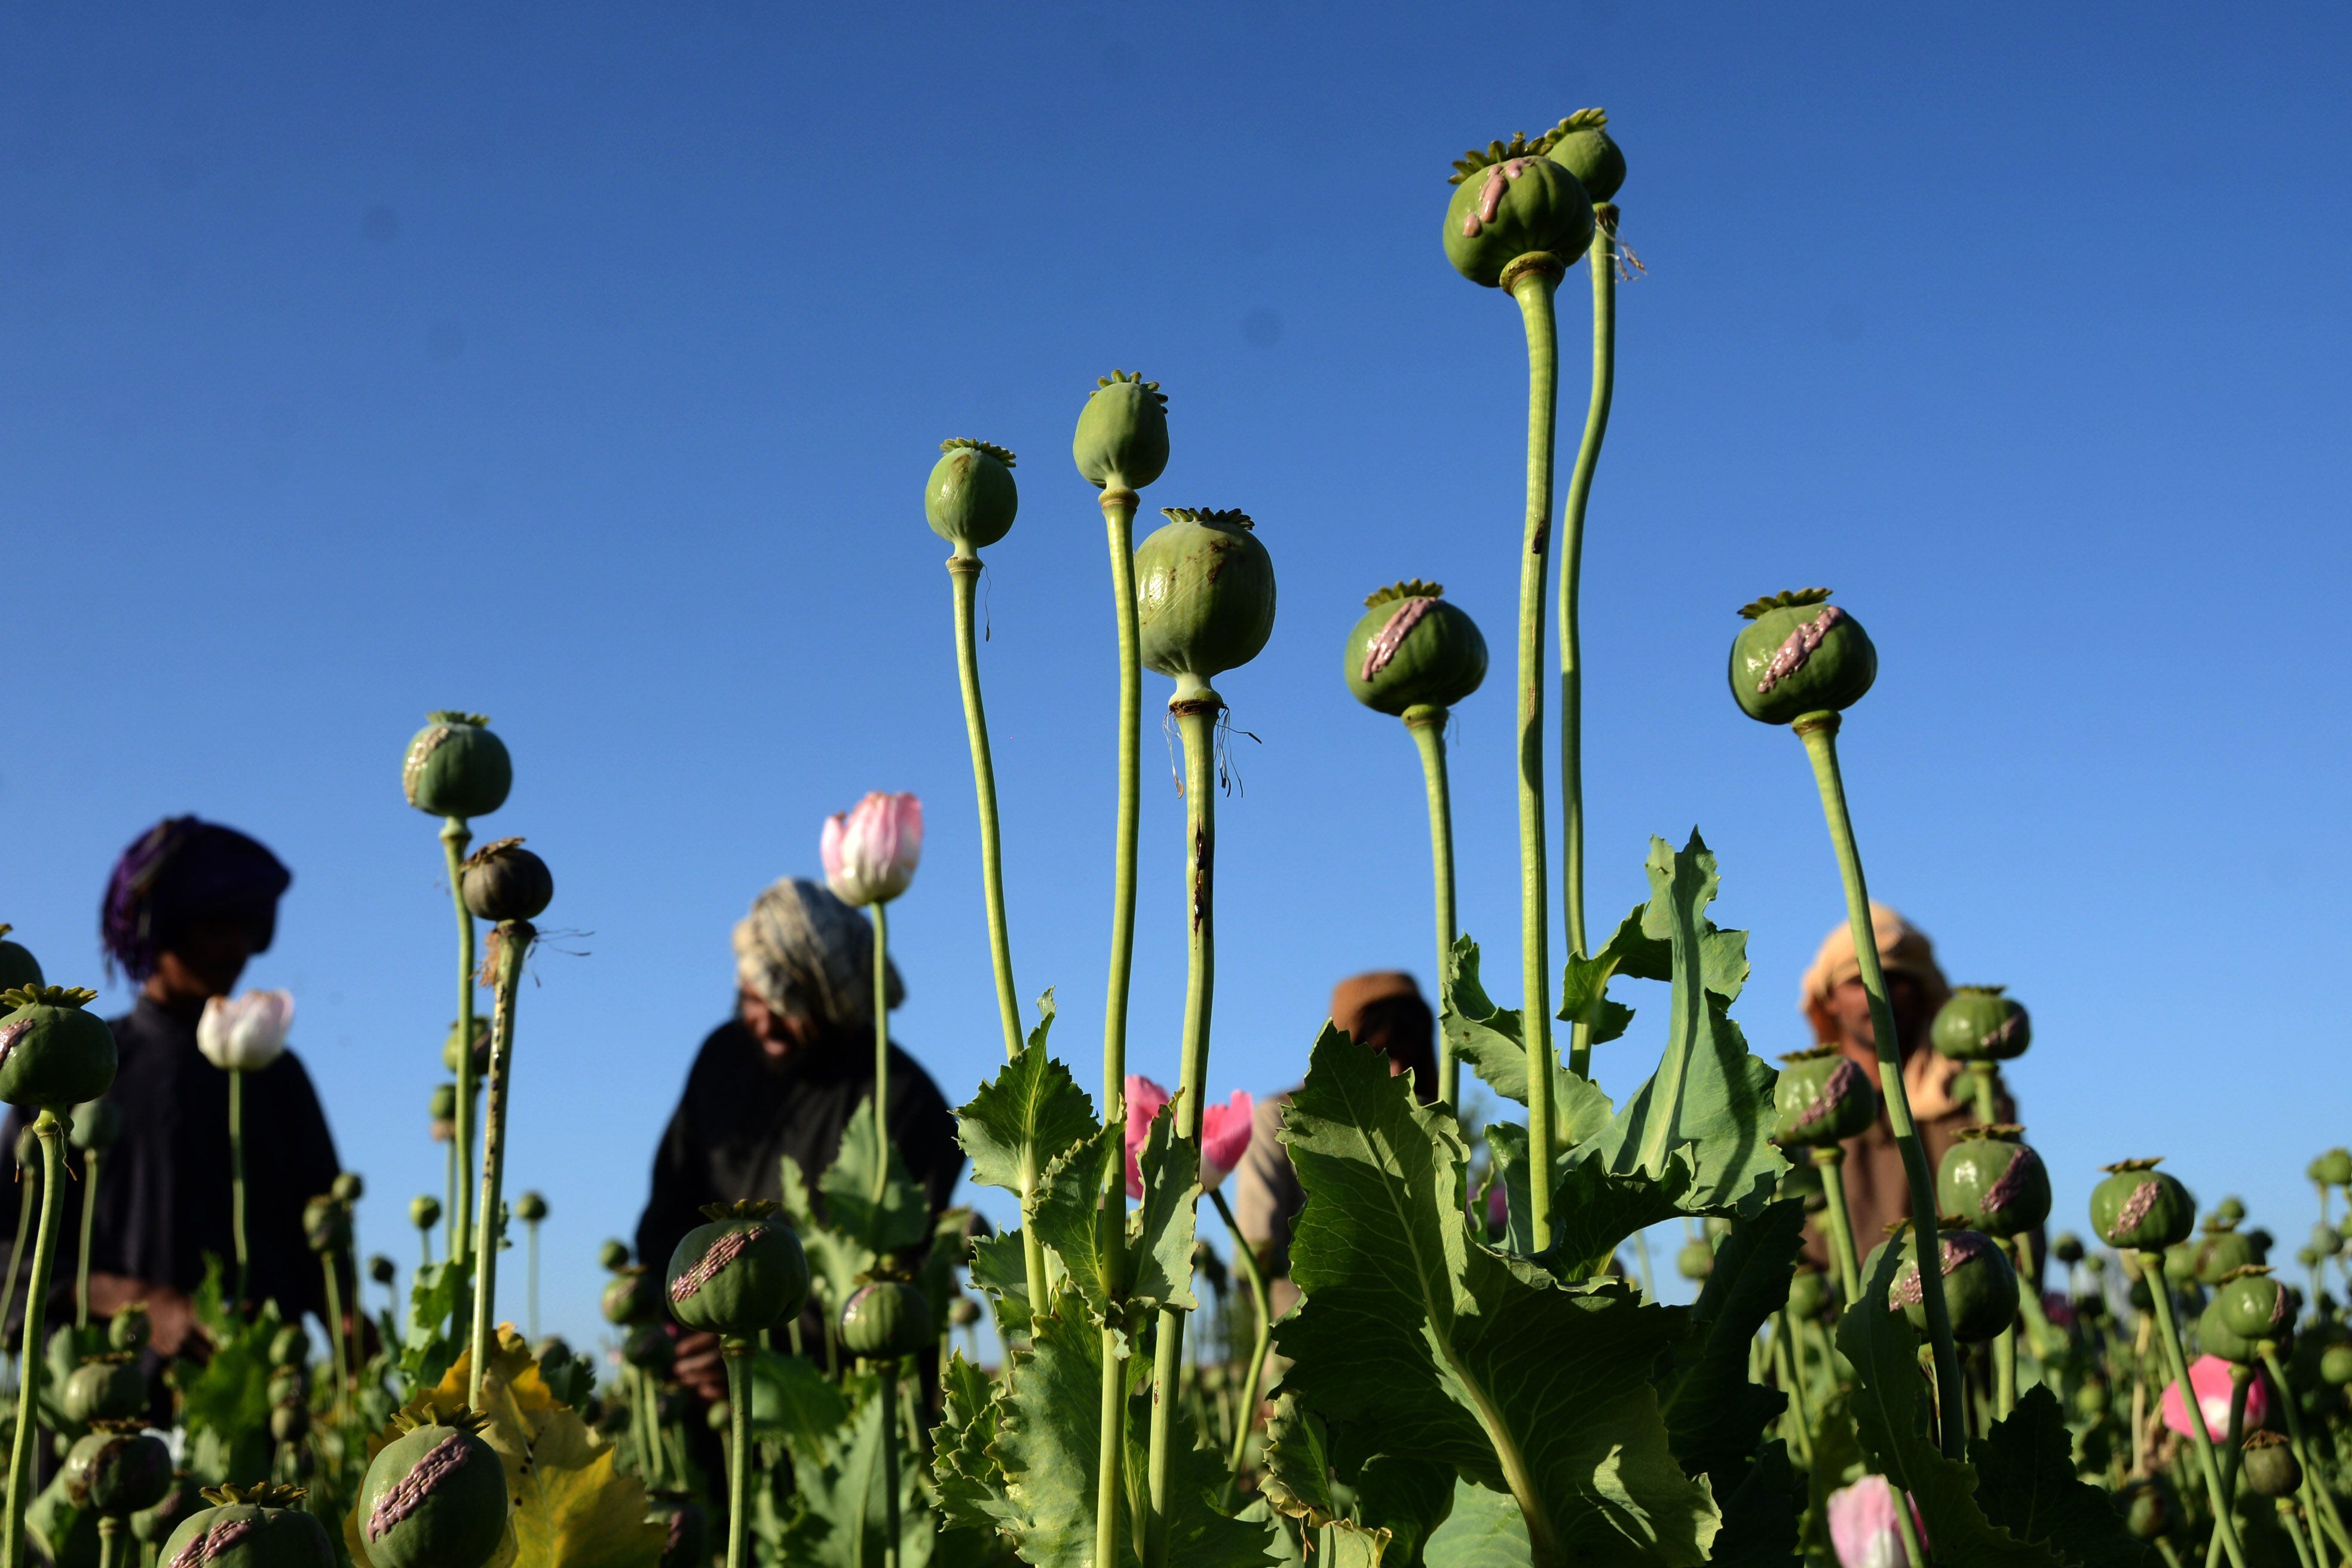 Los inversionistas daban las semillas de amapola a los campesino para cultivar la goma de opio (Foto: Europa Press/ Sanaullah Seiam)